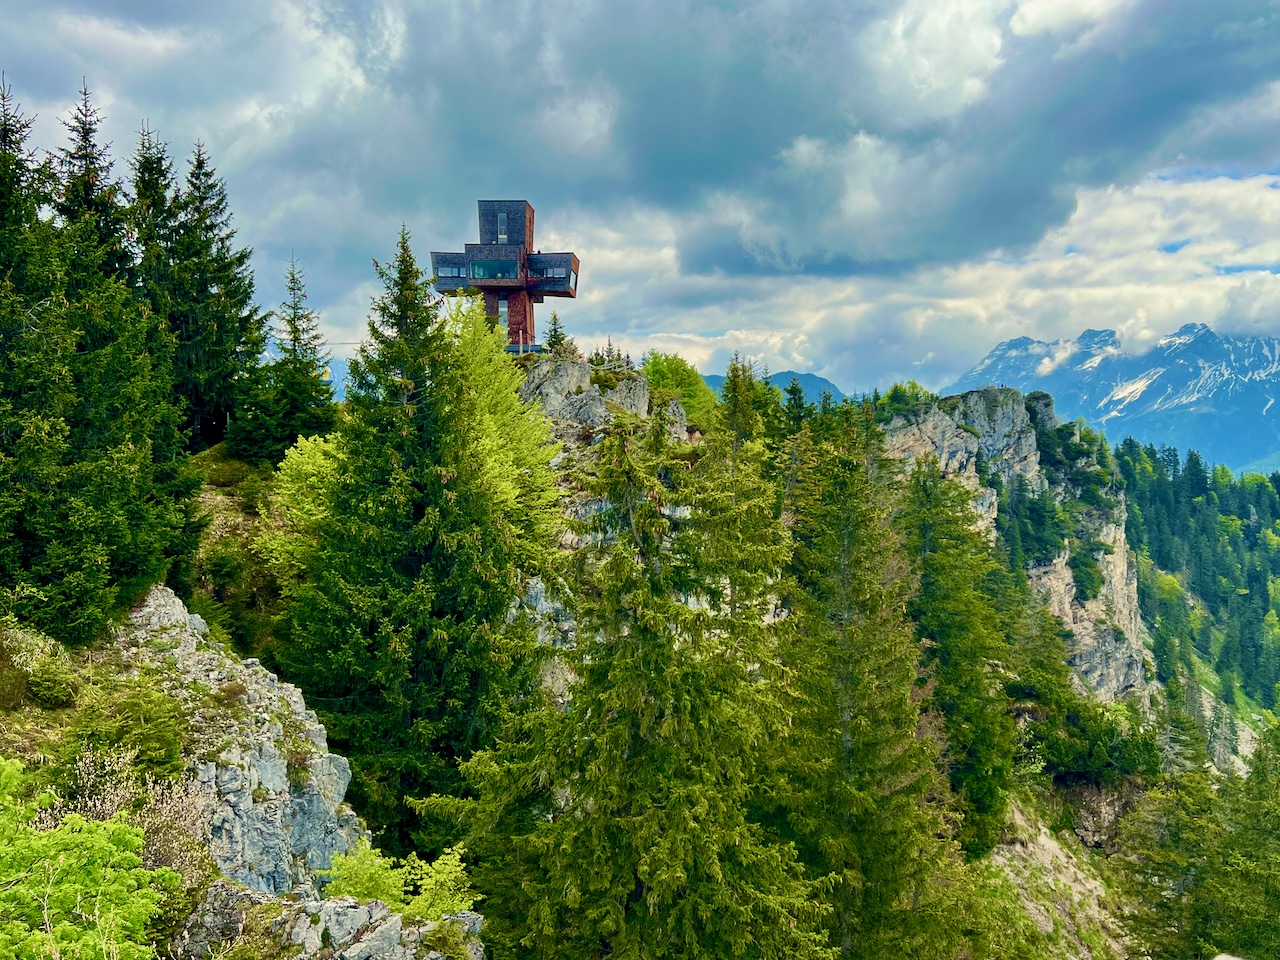 Impressionnant : Le Jakobskreuz sur le Buchensteinwand est la plus haute croix sommitale accessible au monde. Carnet de voyage Fieberbrunn Pillerseetal expériences conseils curiosités activités